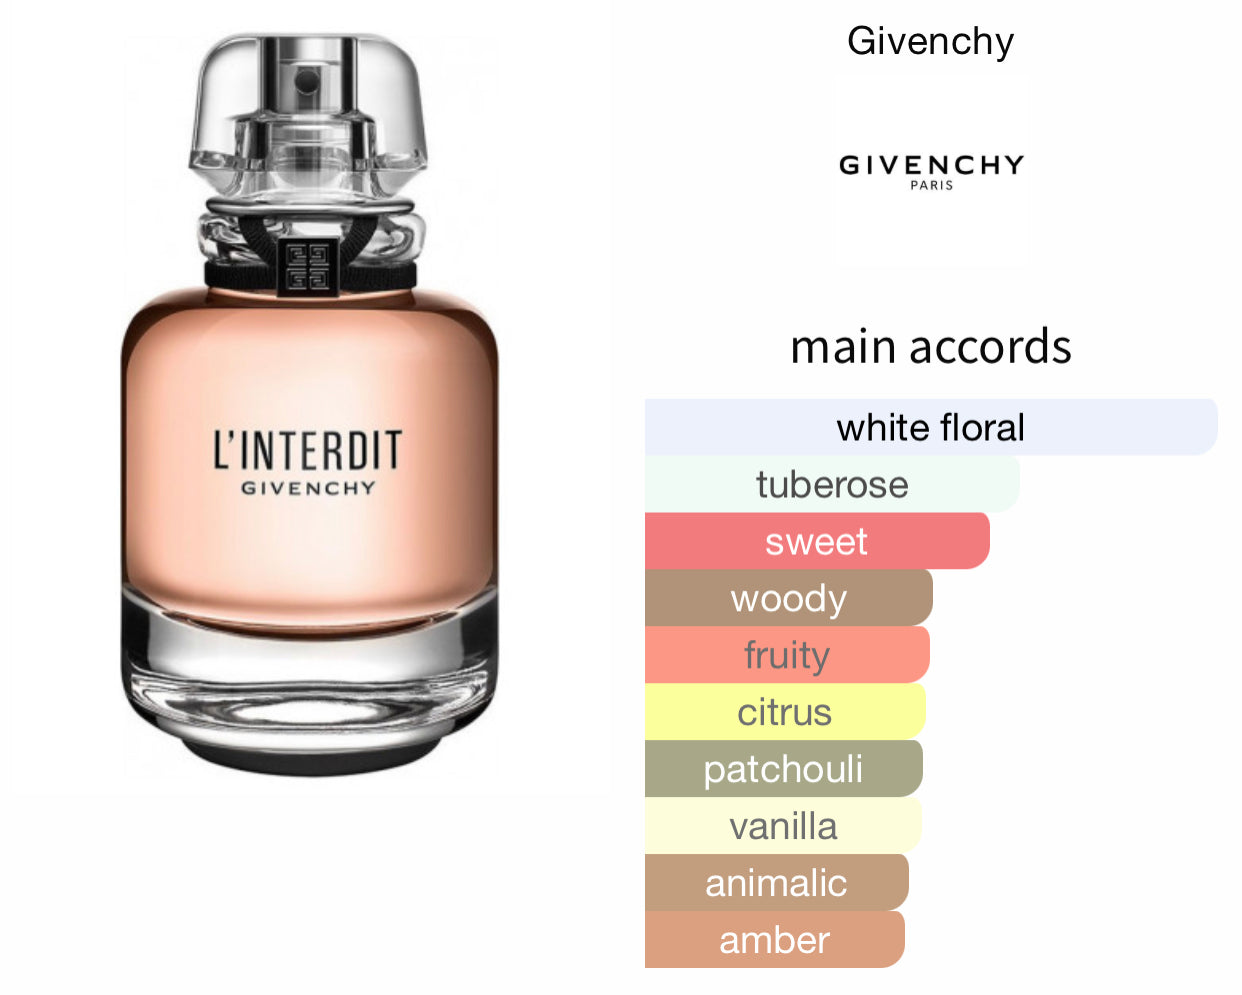 Inspired by L’Interdit Eau De Parfum